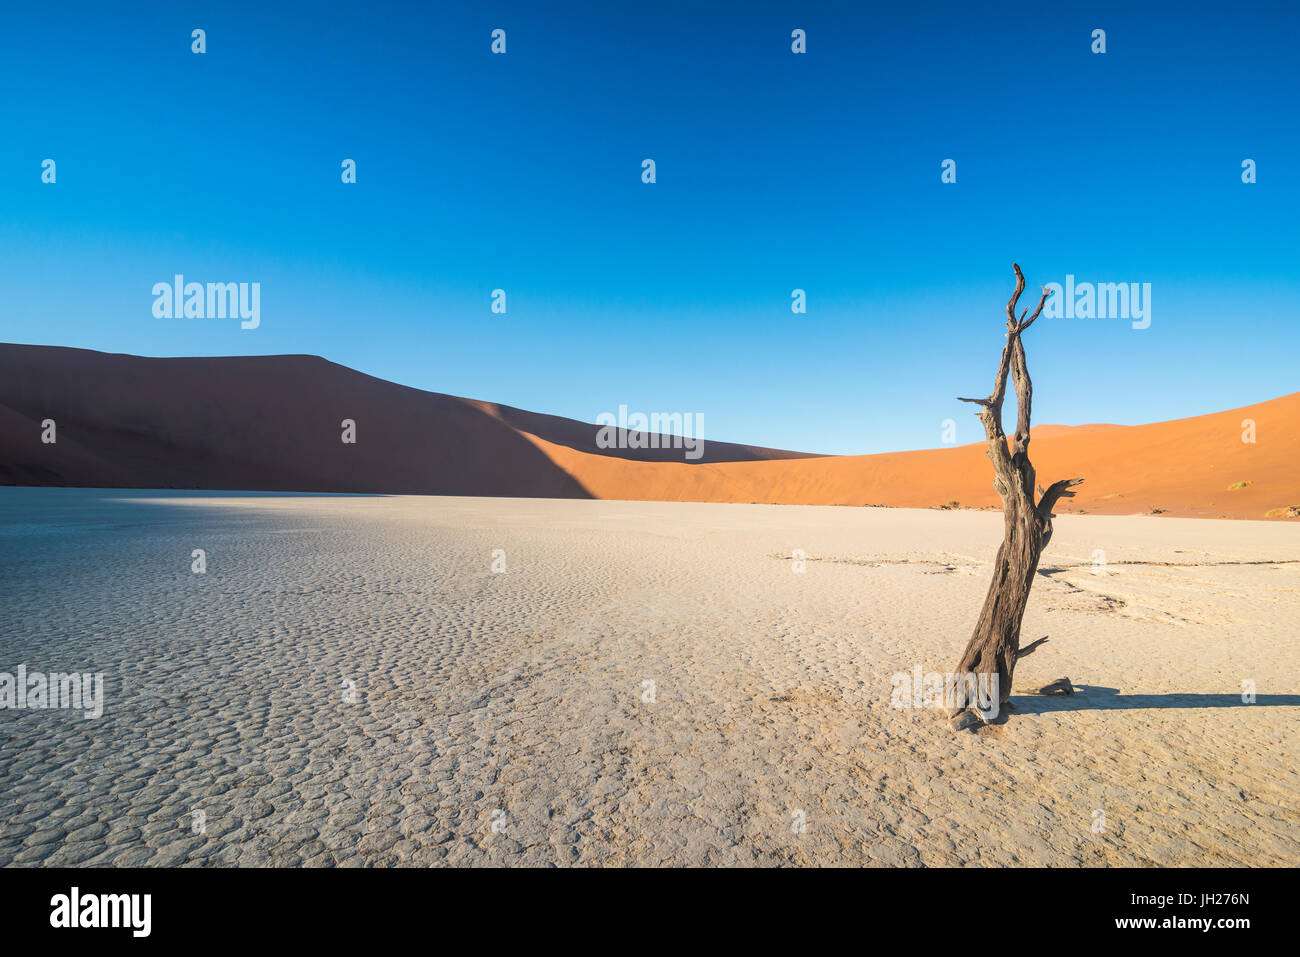 Deadvlei, trocknen ein altes See in der Namib-Wüste, Namibia, Afrika Stockfoto